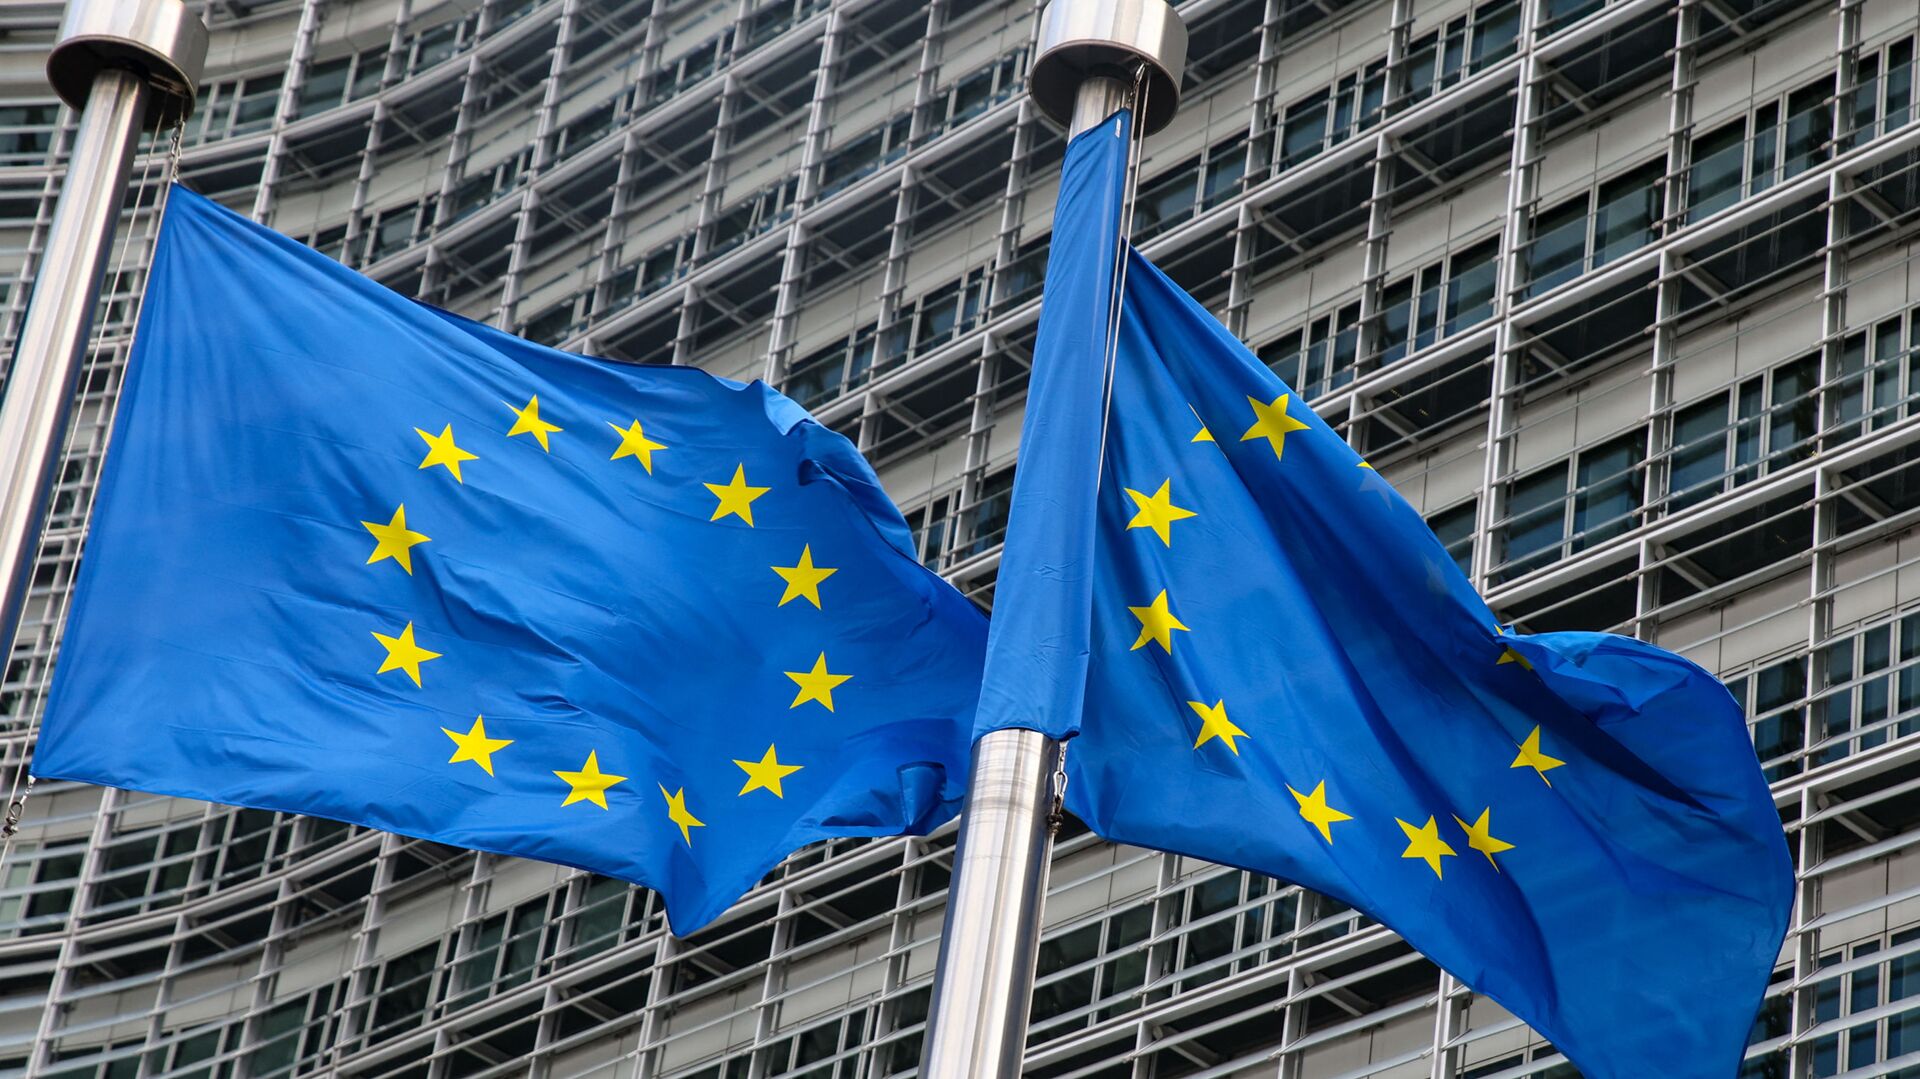 Флаги Европейского союза у штаб-квартиры Европейской комиссии в Брюсселе  - Sputnik Lietuva, 1920, 02.05.2021